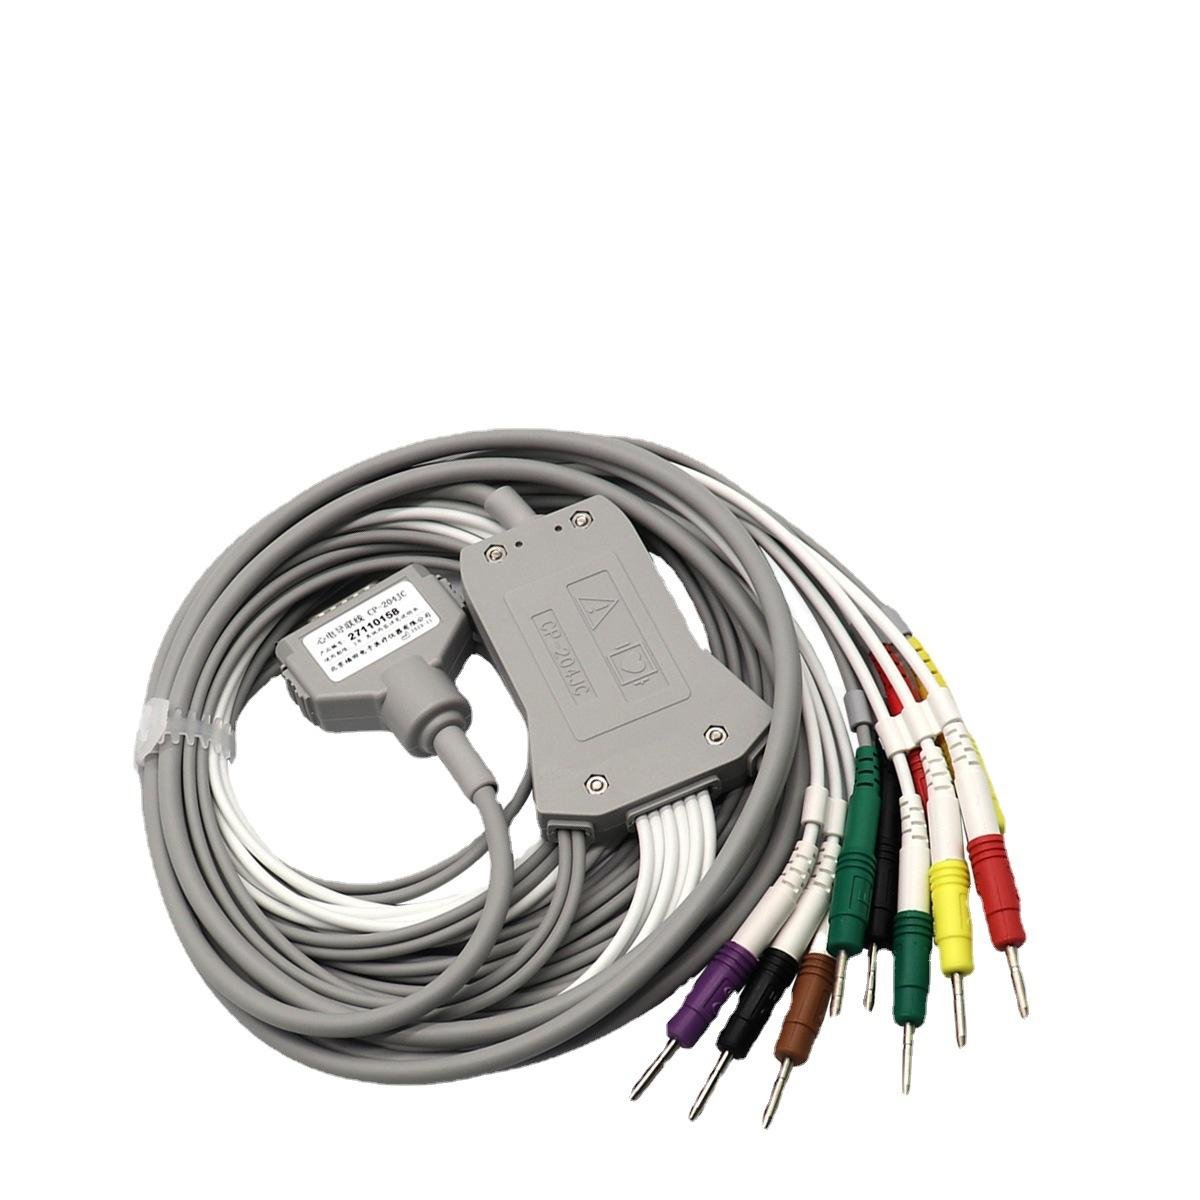 Fukuda cable leadwires for ECG machine 27110158 CP-204JC 15 pin ecg leadwire 4